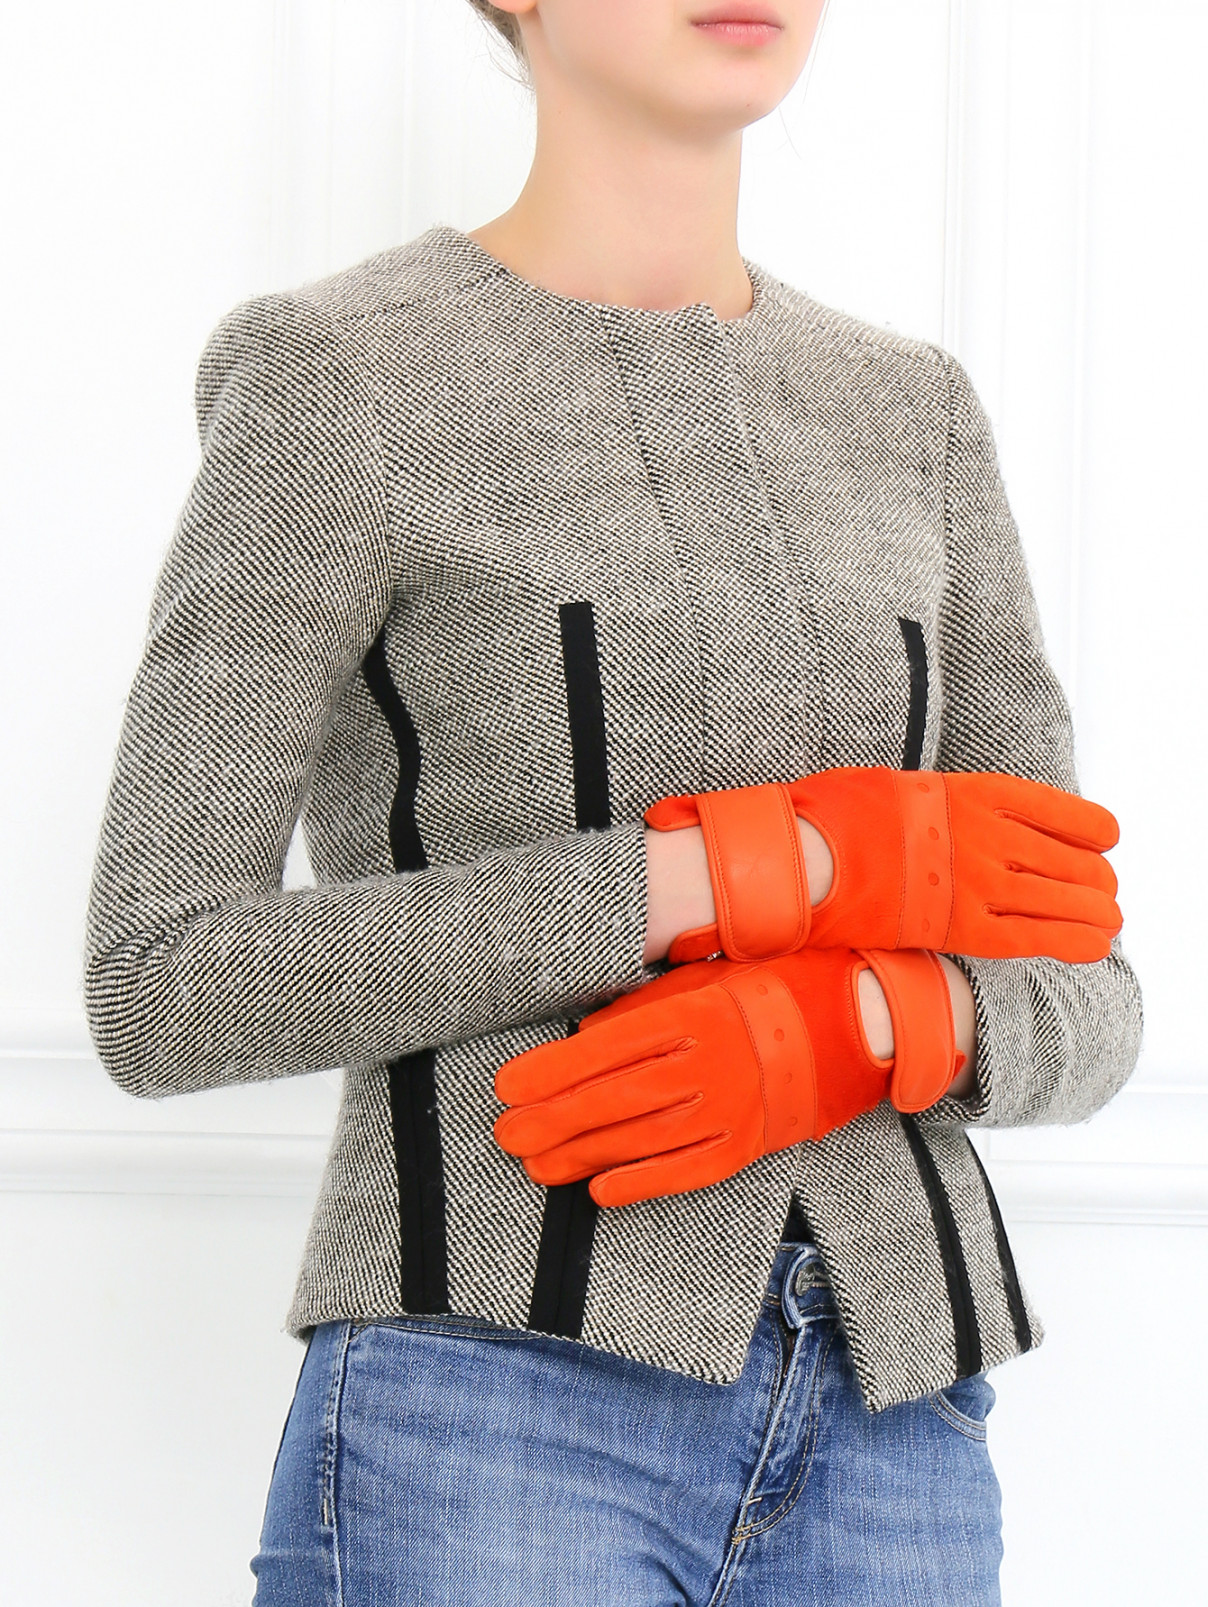 Перчатки из кожи  с отделкой Sportmax  –  Модель Общий вид  – Цвет:  Оранжевый